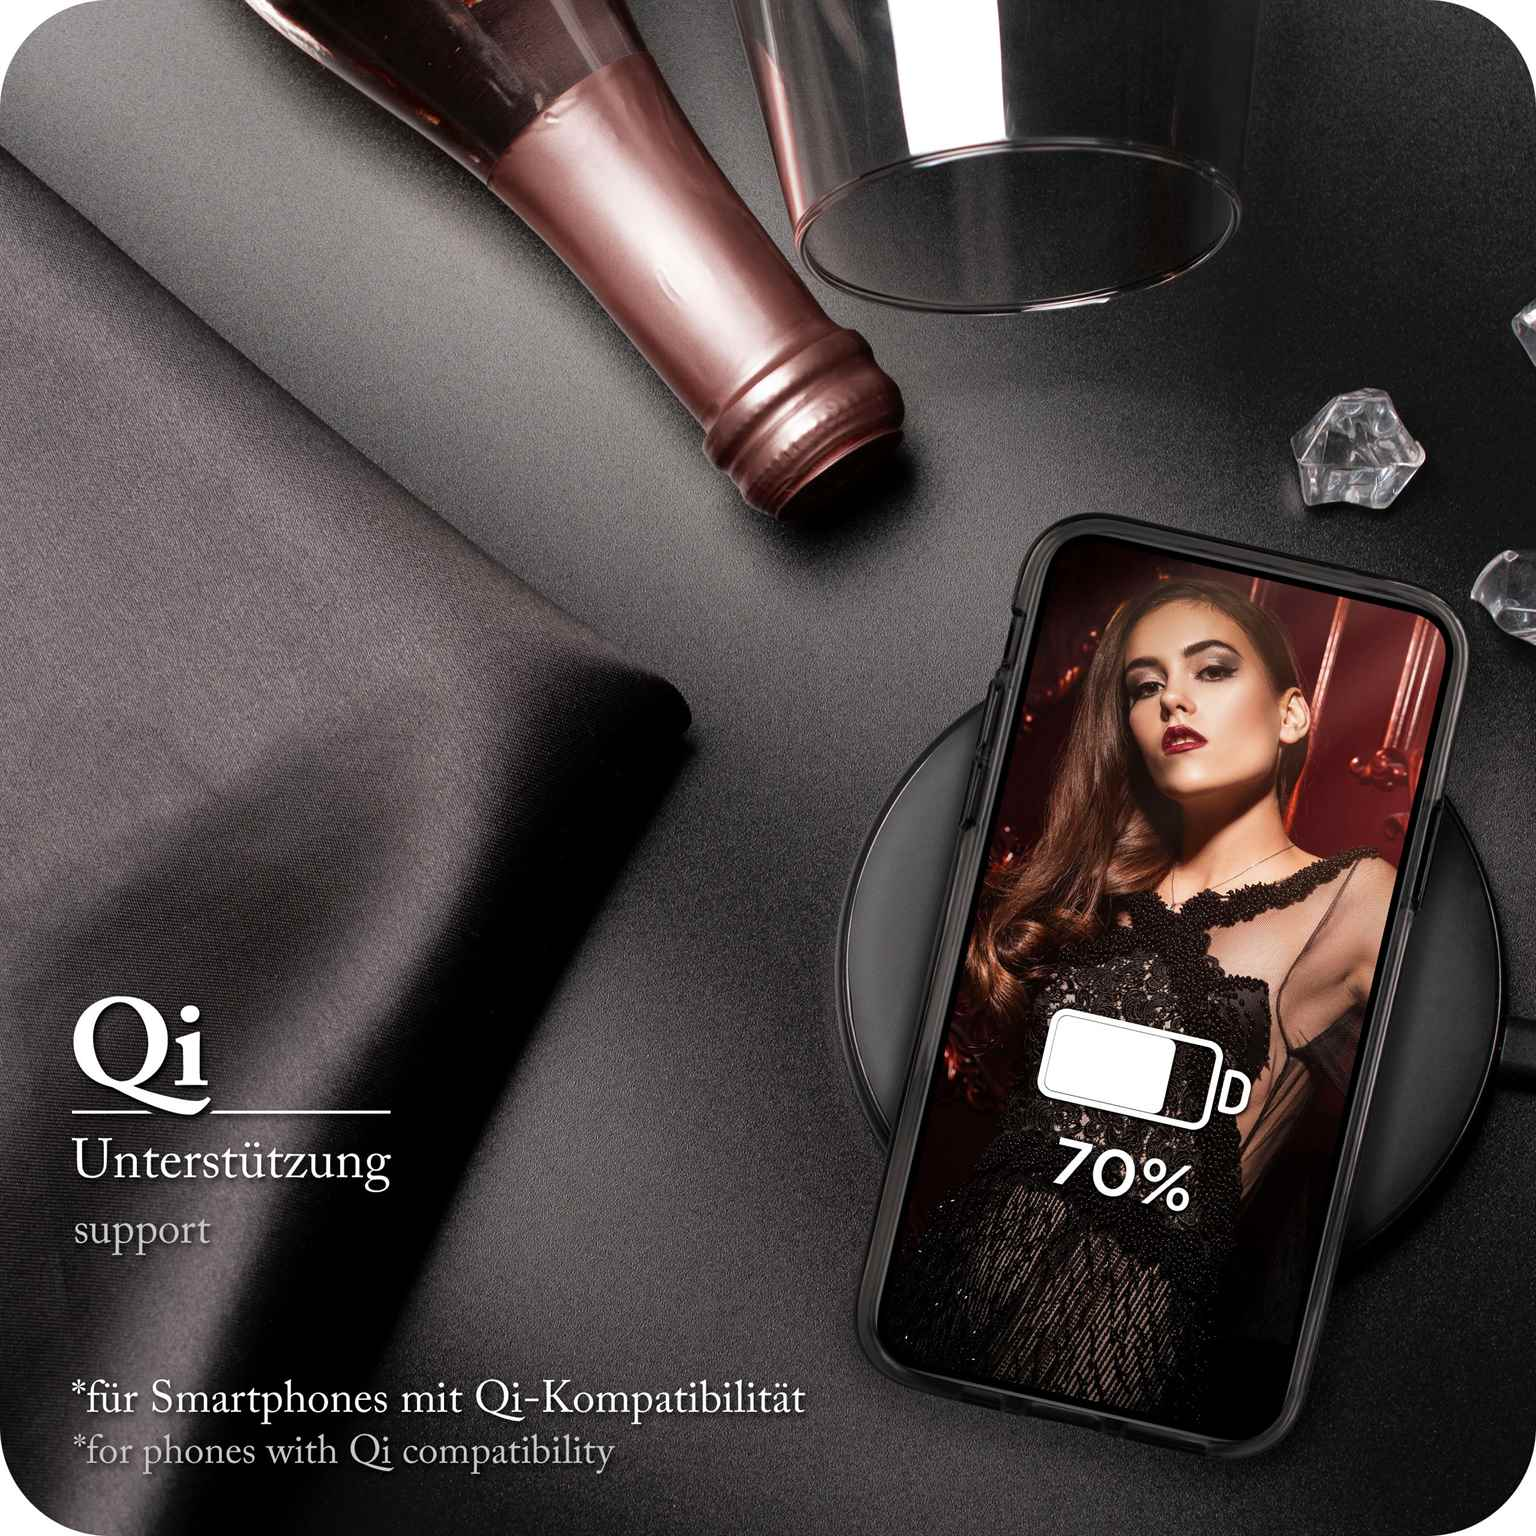 Glitter Black Backcover, Case, - ONEFLOW iPhone Apple, XR, Glamour